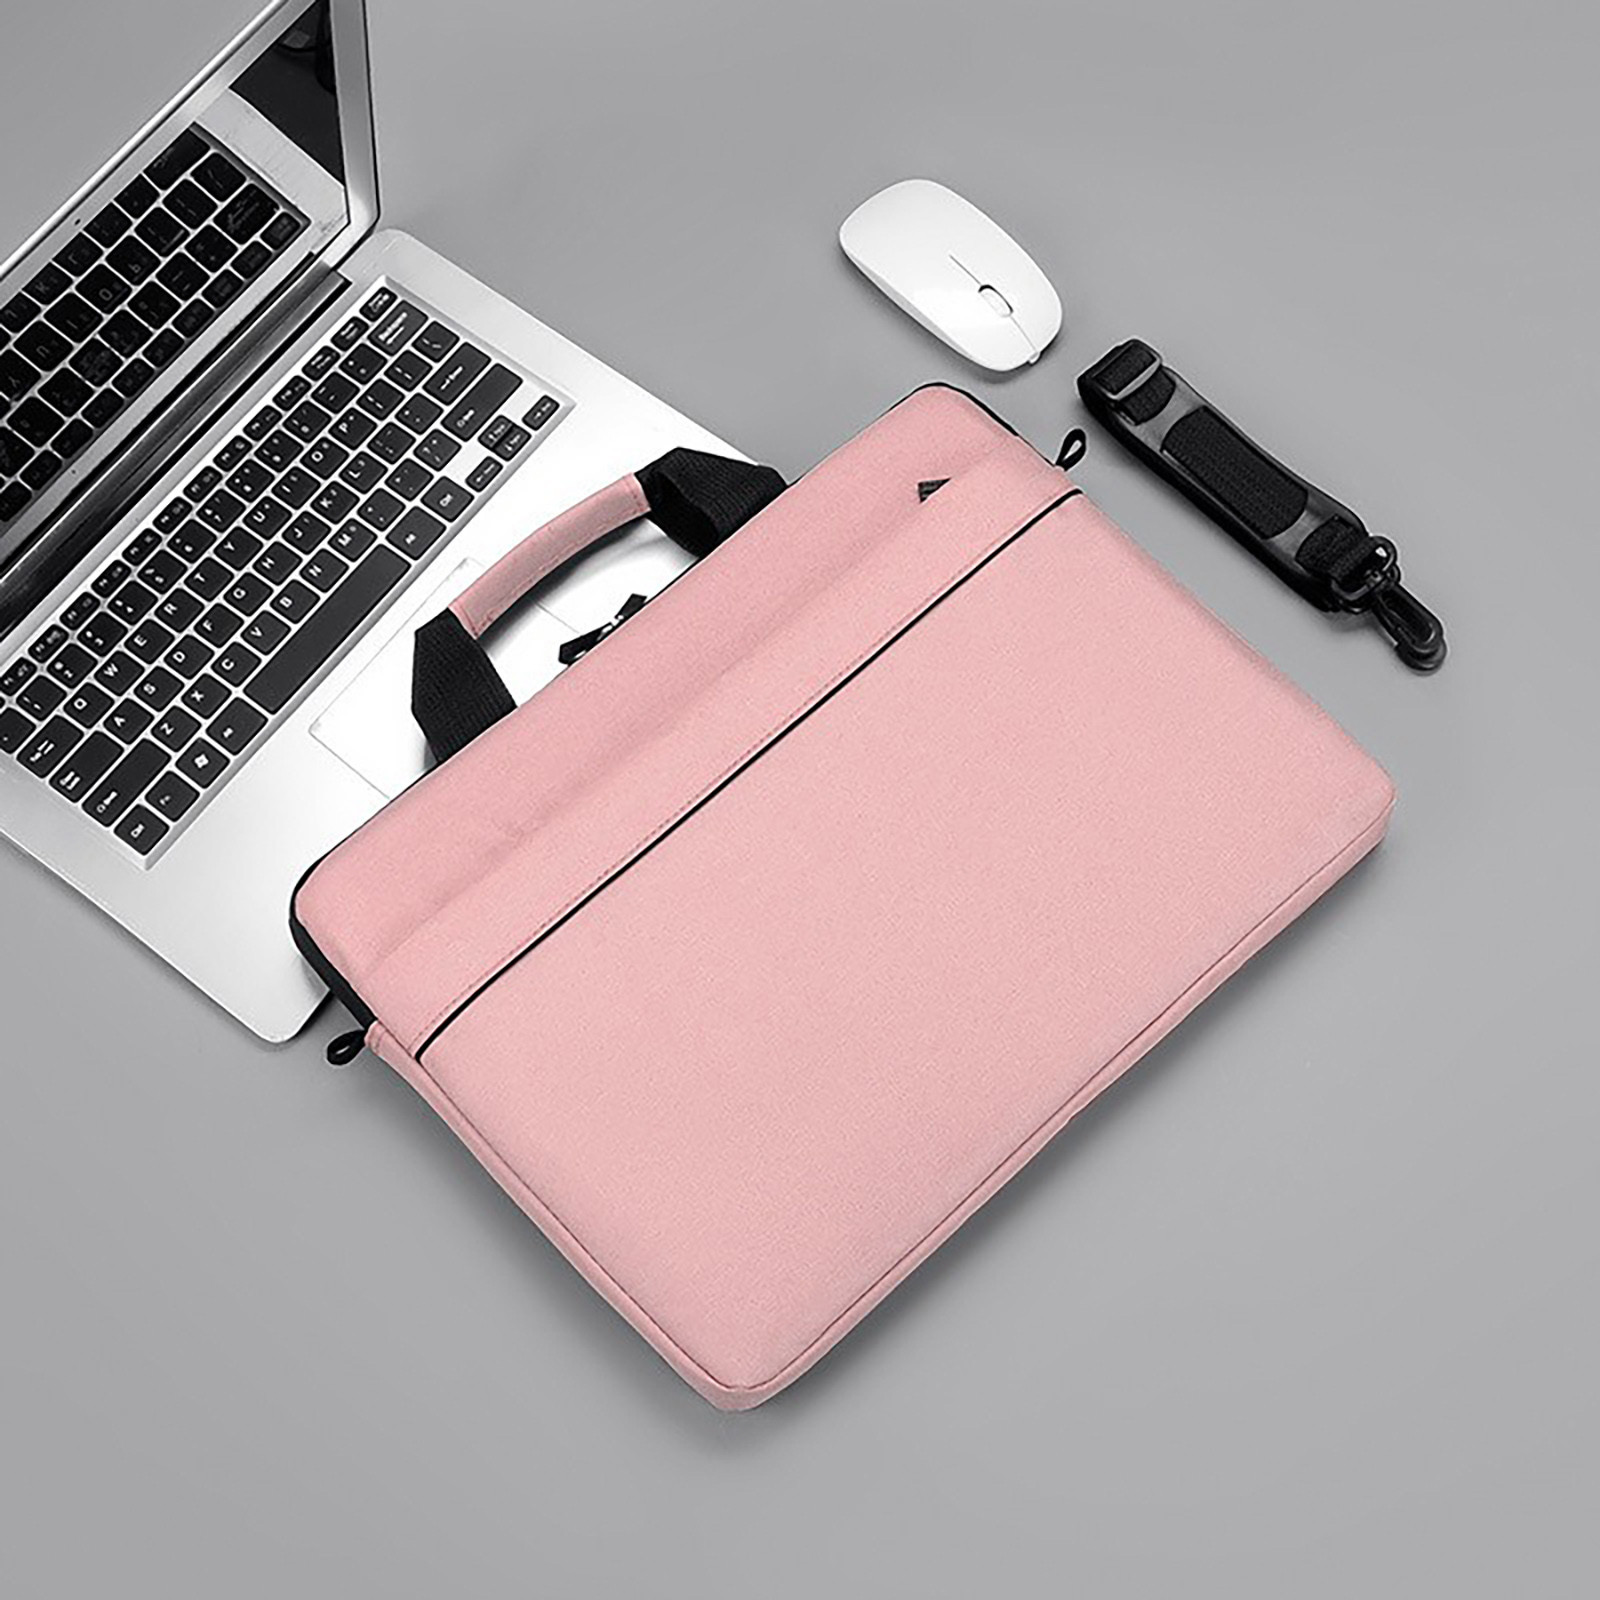 Wovilon Laptop Bag 15.6 Inch Briefcase Shoulder Bag Water Repellent Laptop Bag Satchel Tablet Bussiness Carrying Handbag Laptop Sleeve for Women and Men-Pink - image 5 of 7